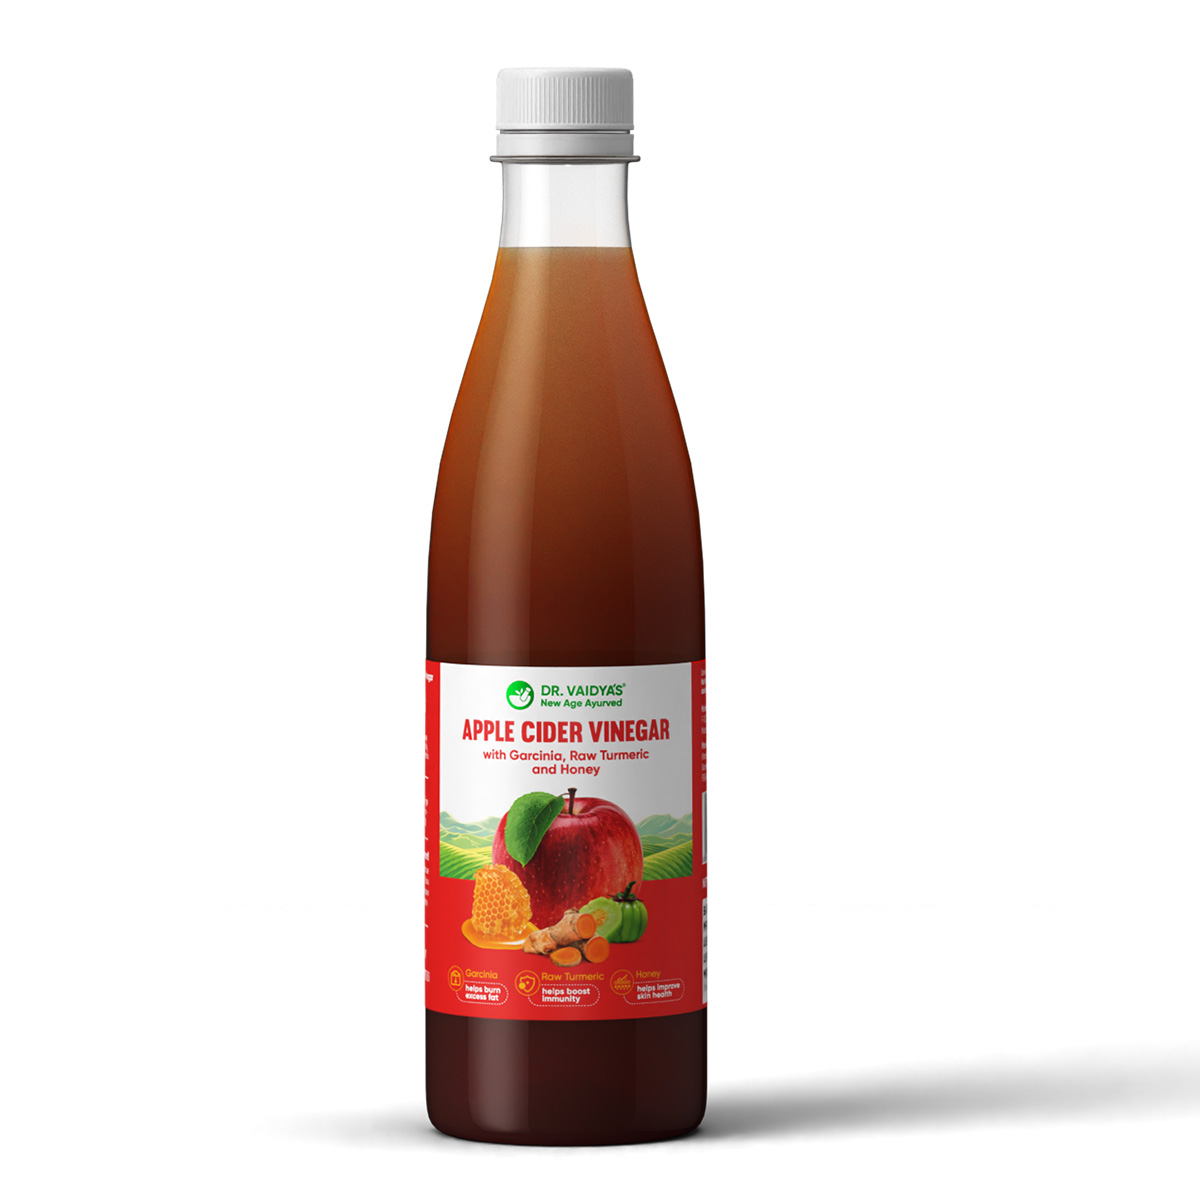 Buy Dr Vaidya's Apple Cider Vinegar at Best Price Online